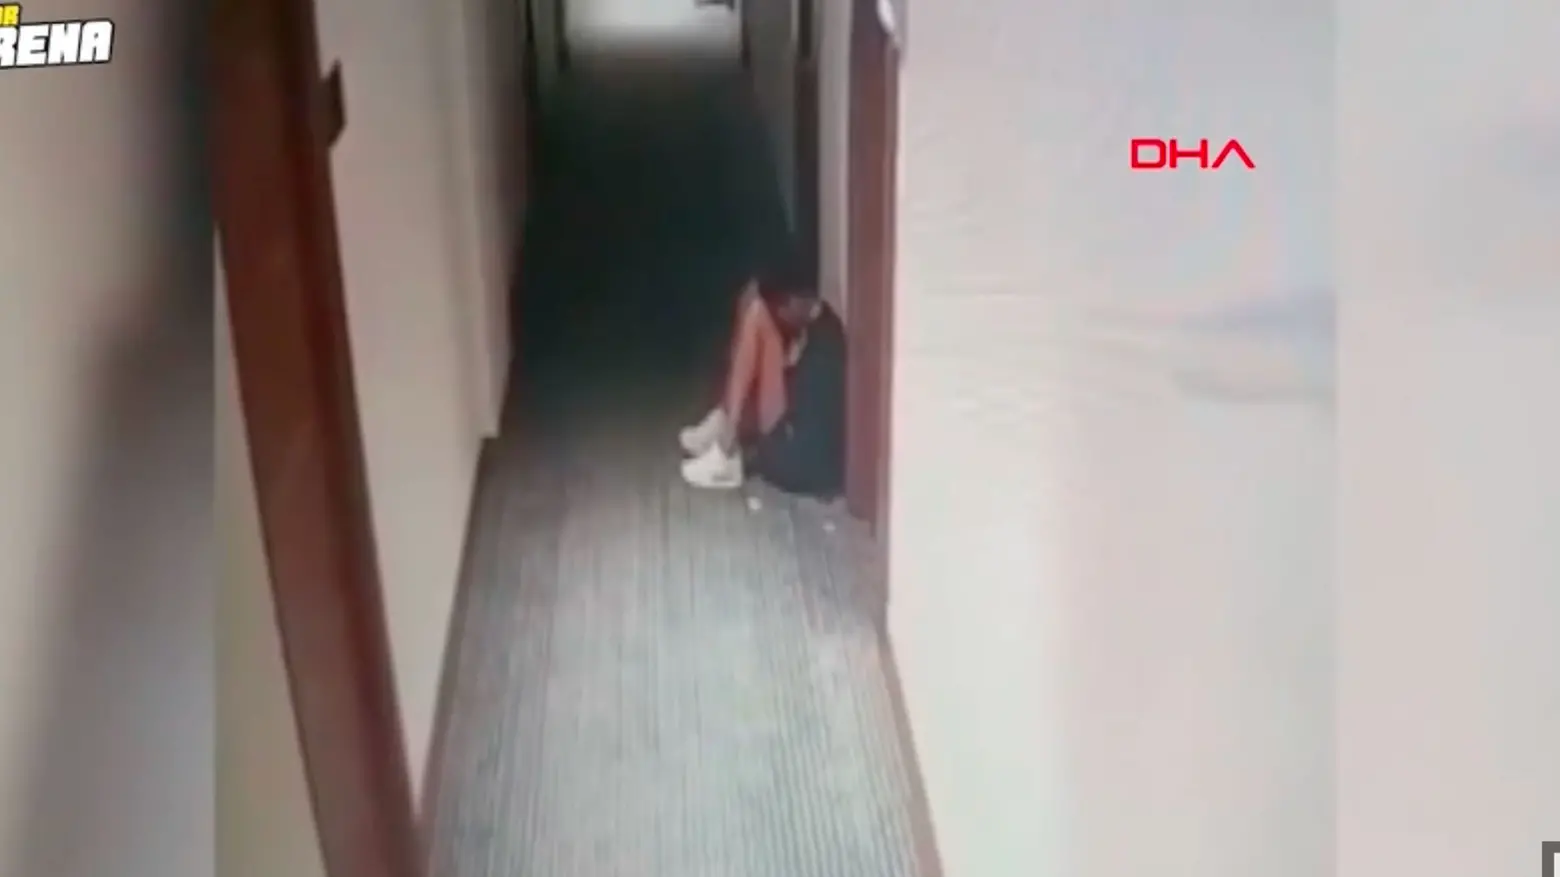 Julia Ituma nel corridoio dell'hotel poco prima della tragedia ripresa dalle telecamere (dal sito hurriyet.com)